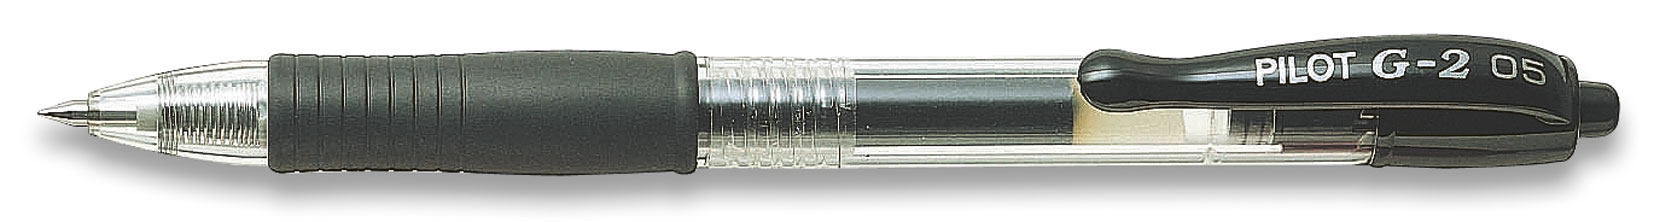 Ручка гелевая Pilot G2, автомат, 0,5 мм, черный